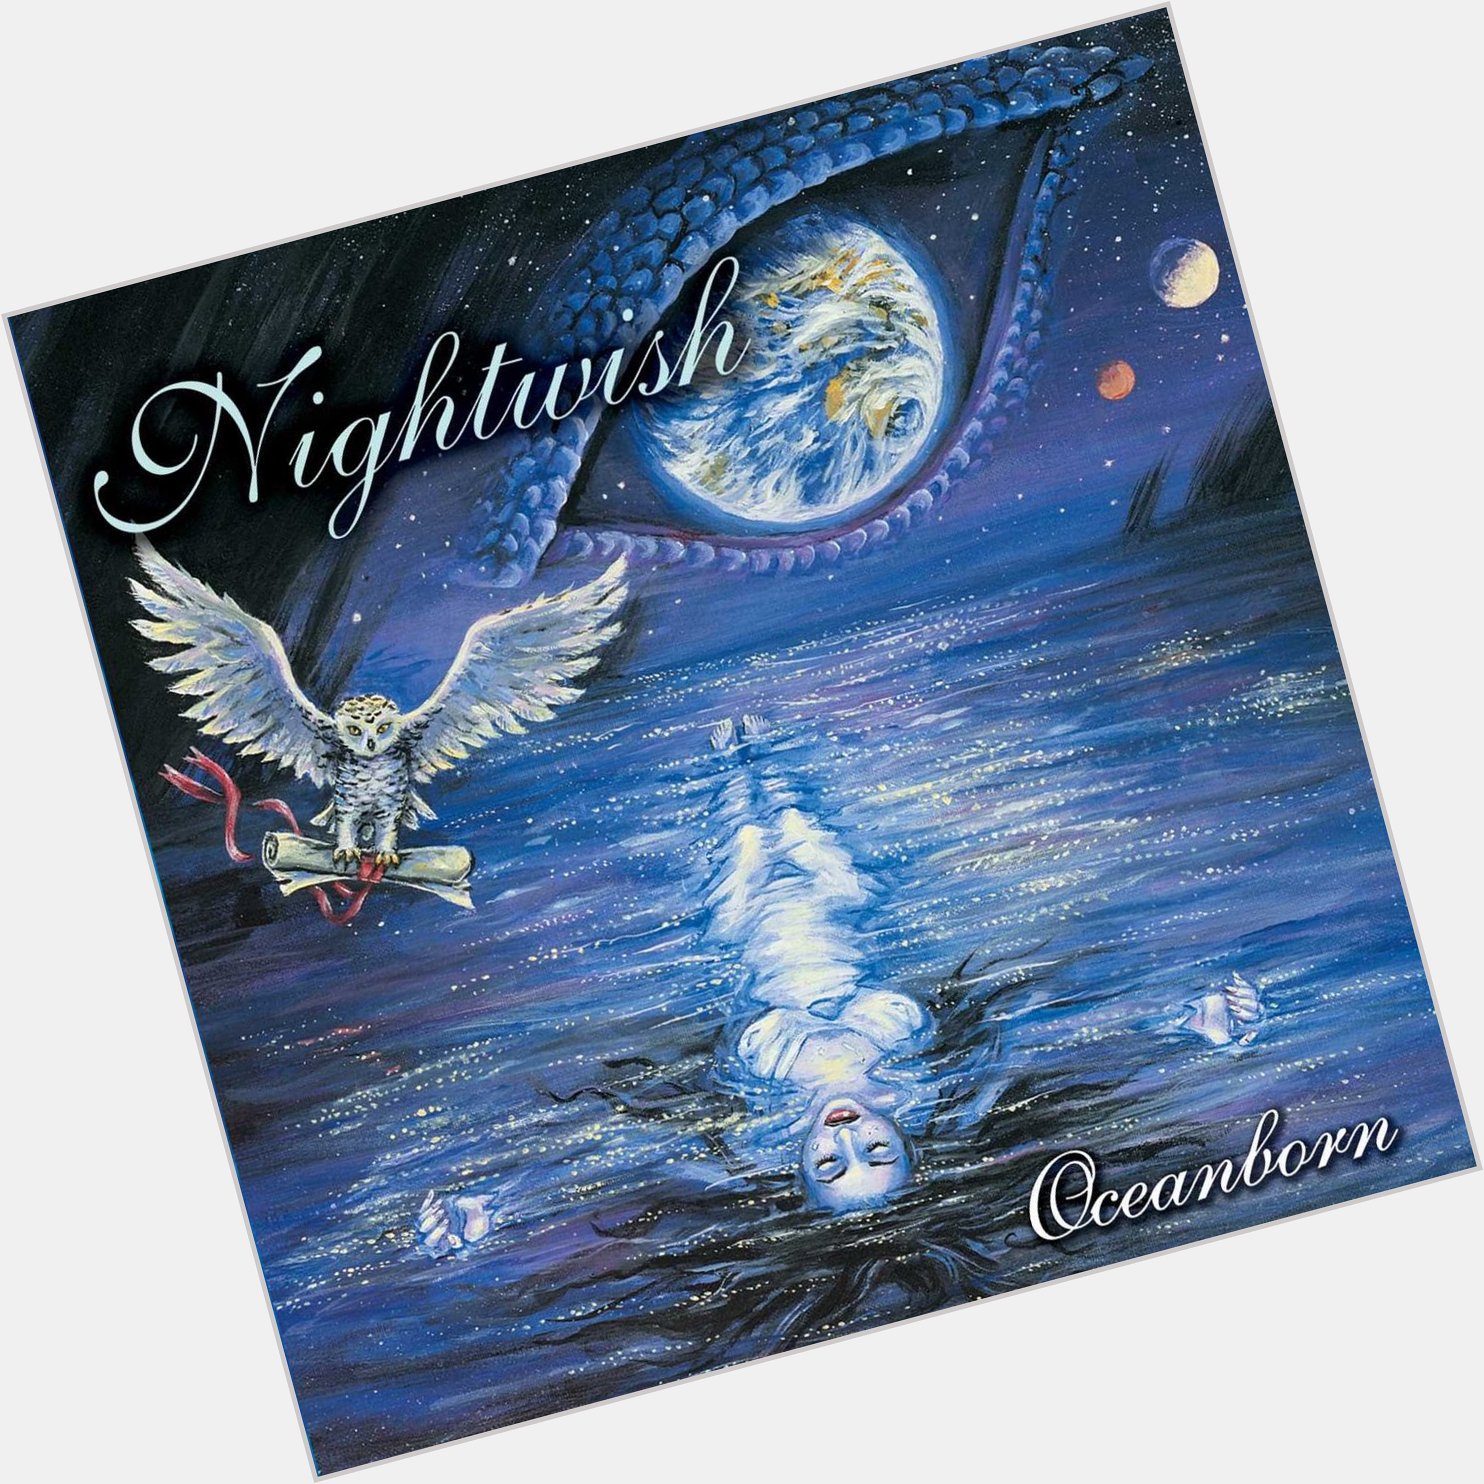  Stargazers
from Oceanborn
by Nightwish

Happy Birthday, Emppu Vuorinen Nightwish       